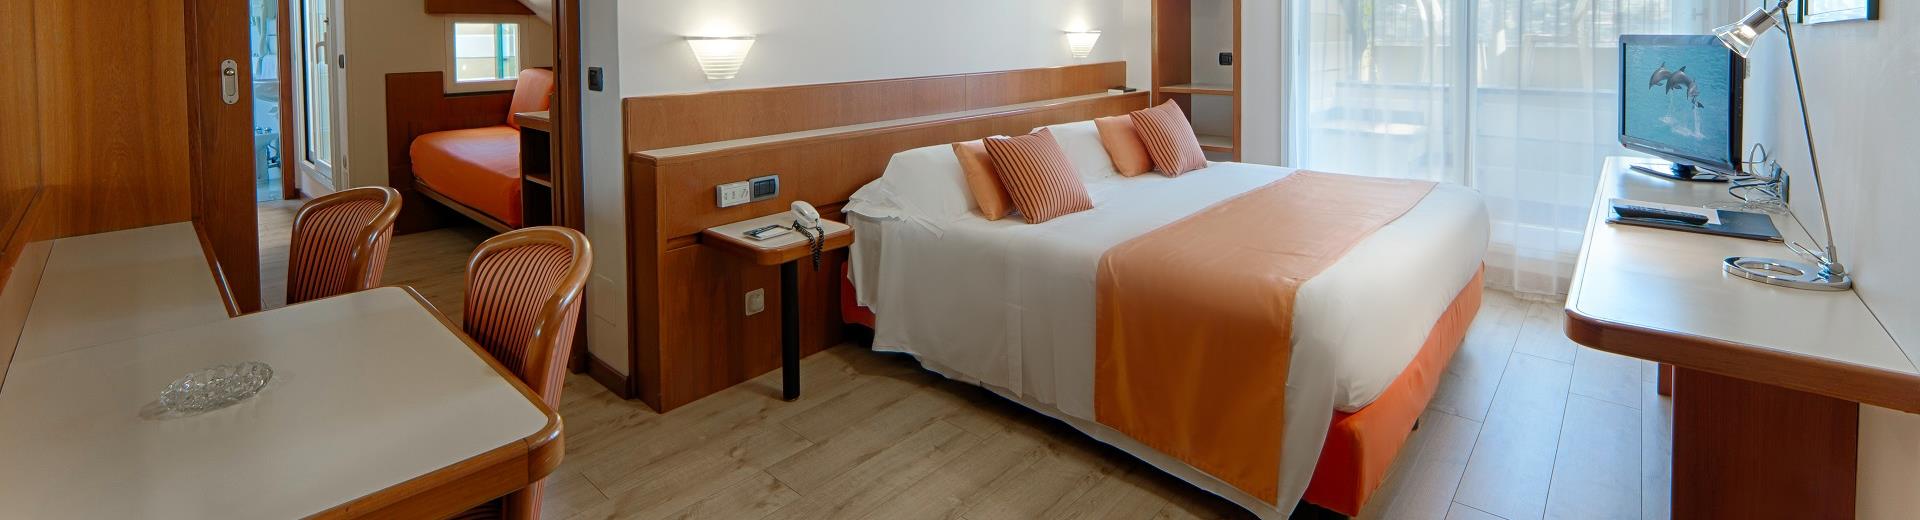 Scegli una delle camere del nostro hotel 4 stelle a Santa Margherita Ligure